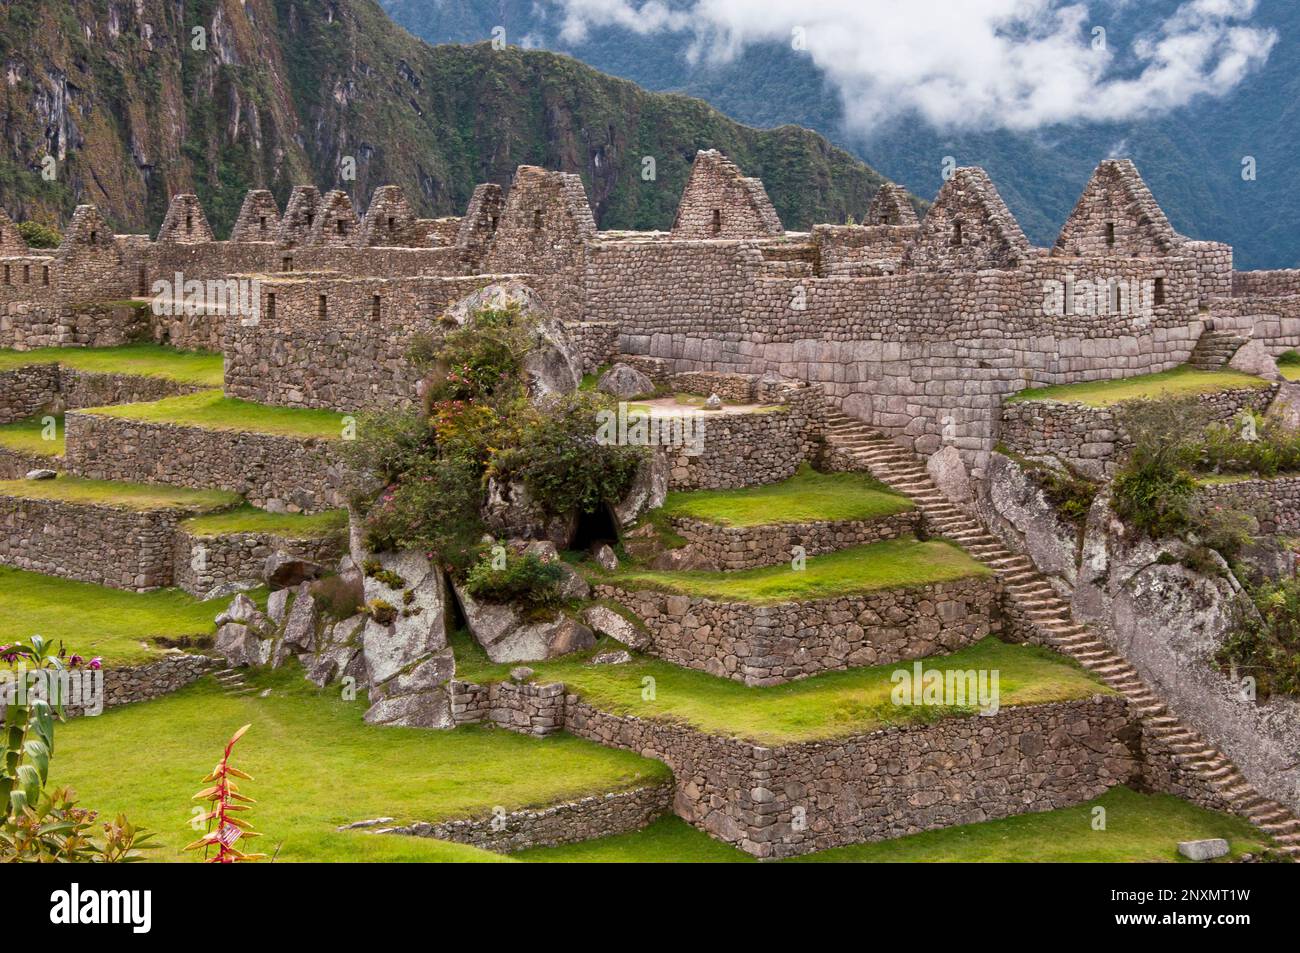 Machu Picchu e terrazze agricole, rovine della città sacra Inca, città perduta di Inkas, cusco, perù. Foto Stock